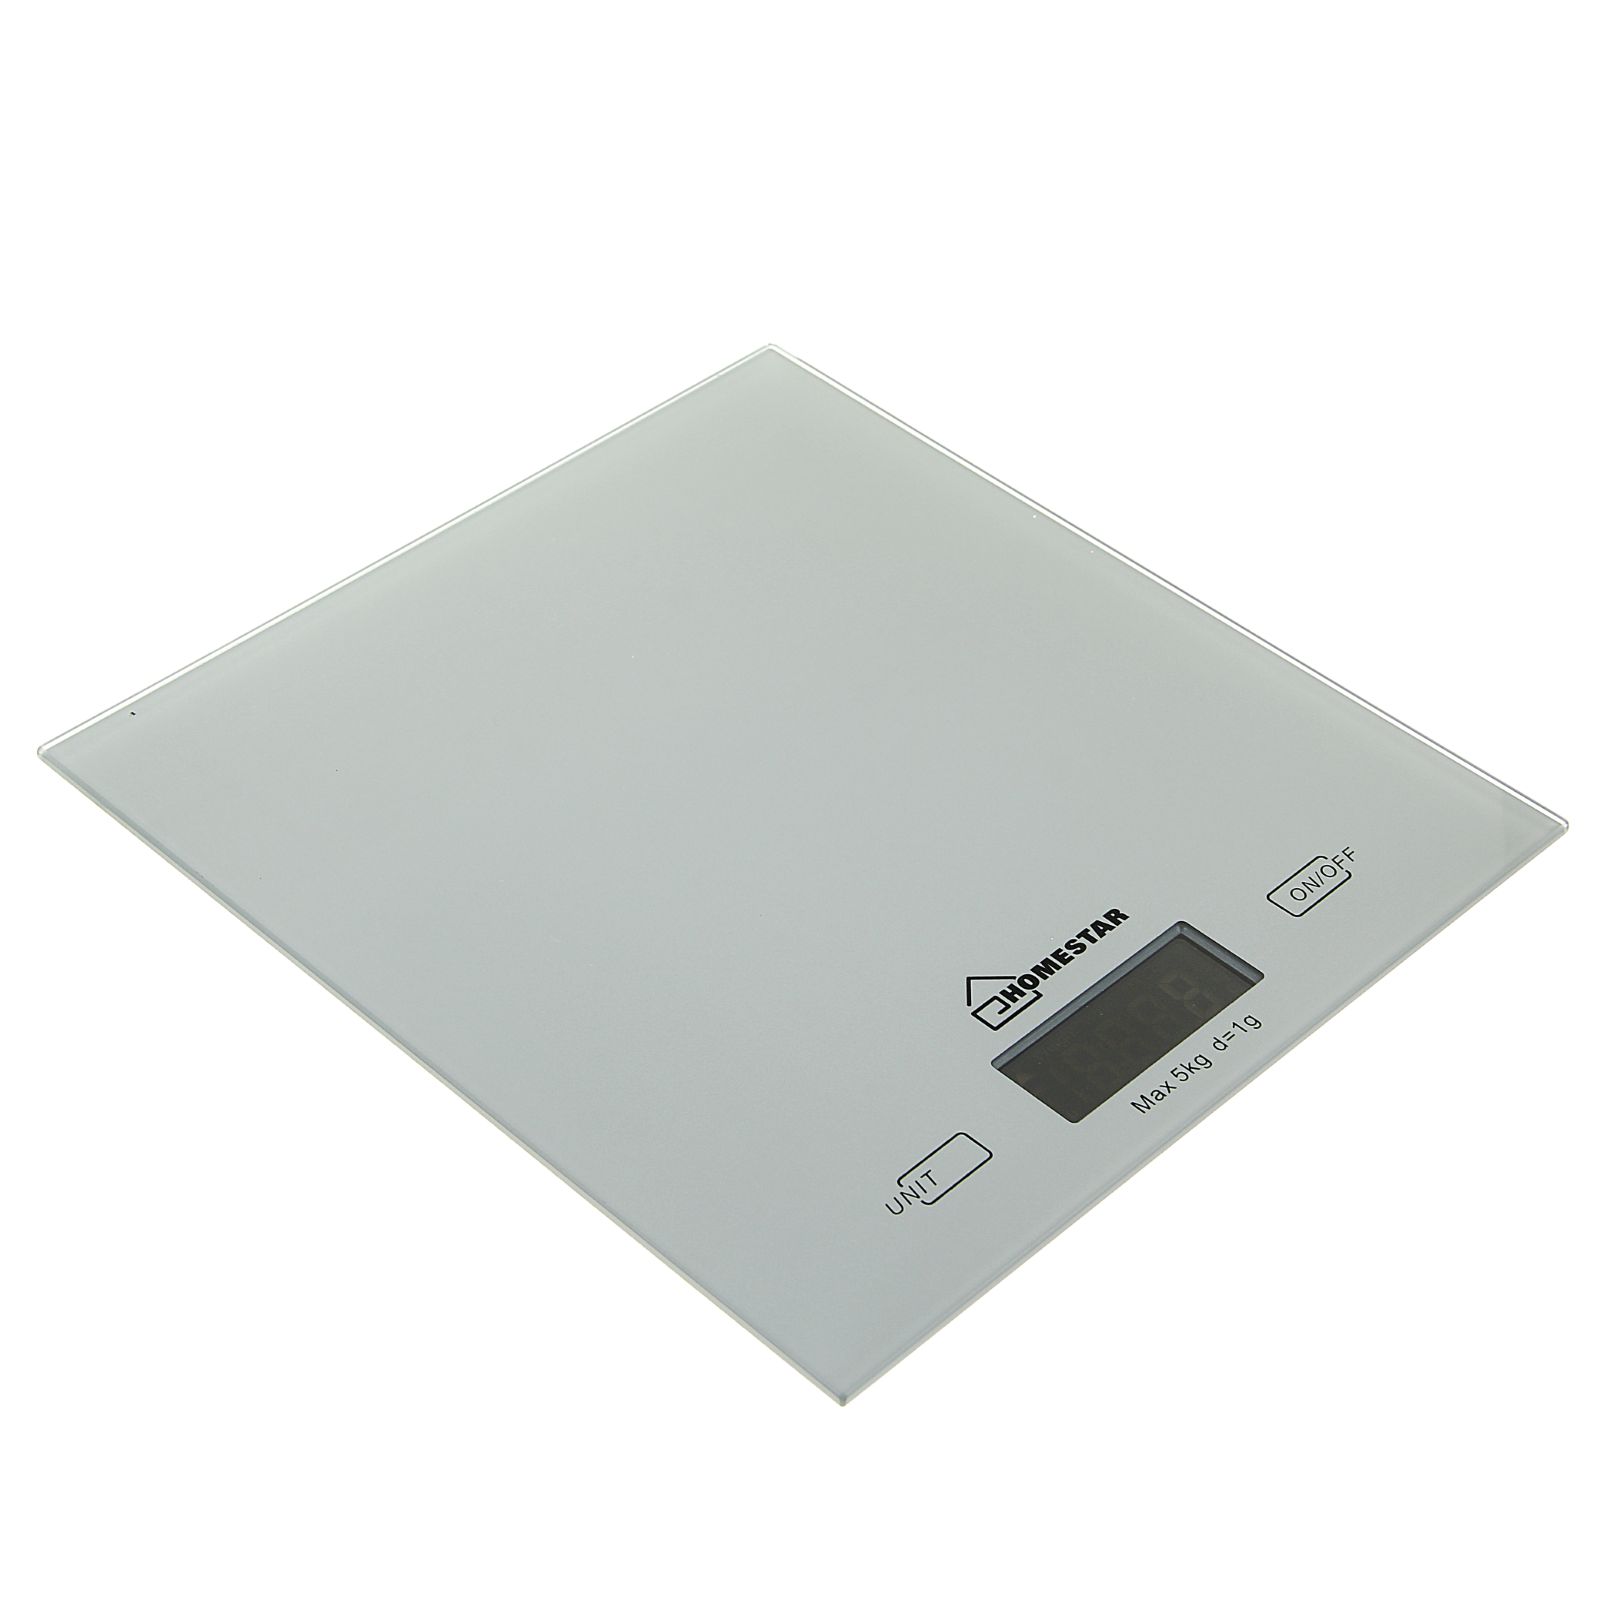 Весы кухонные Luazon Home HS-3006 электронные до 5 кг серебристые - фото 1